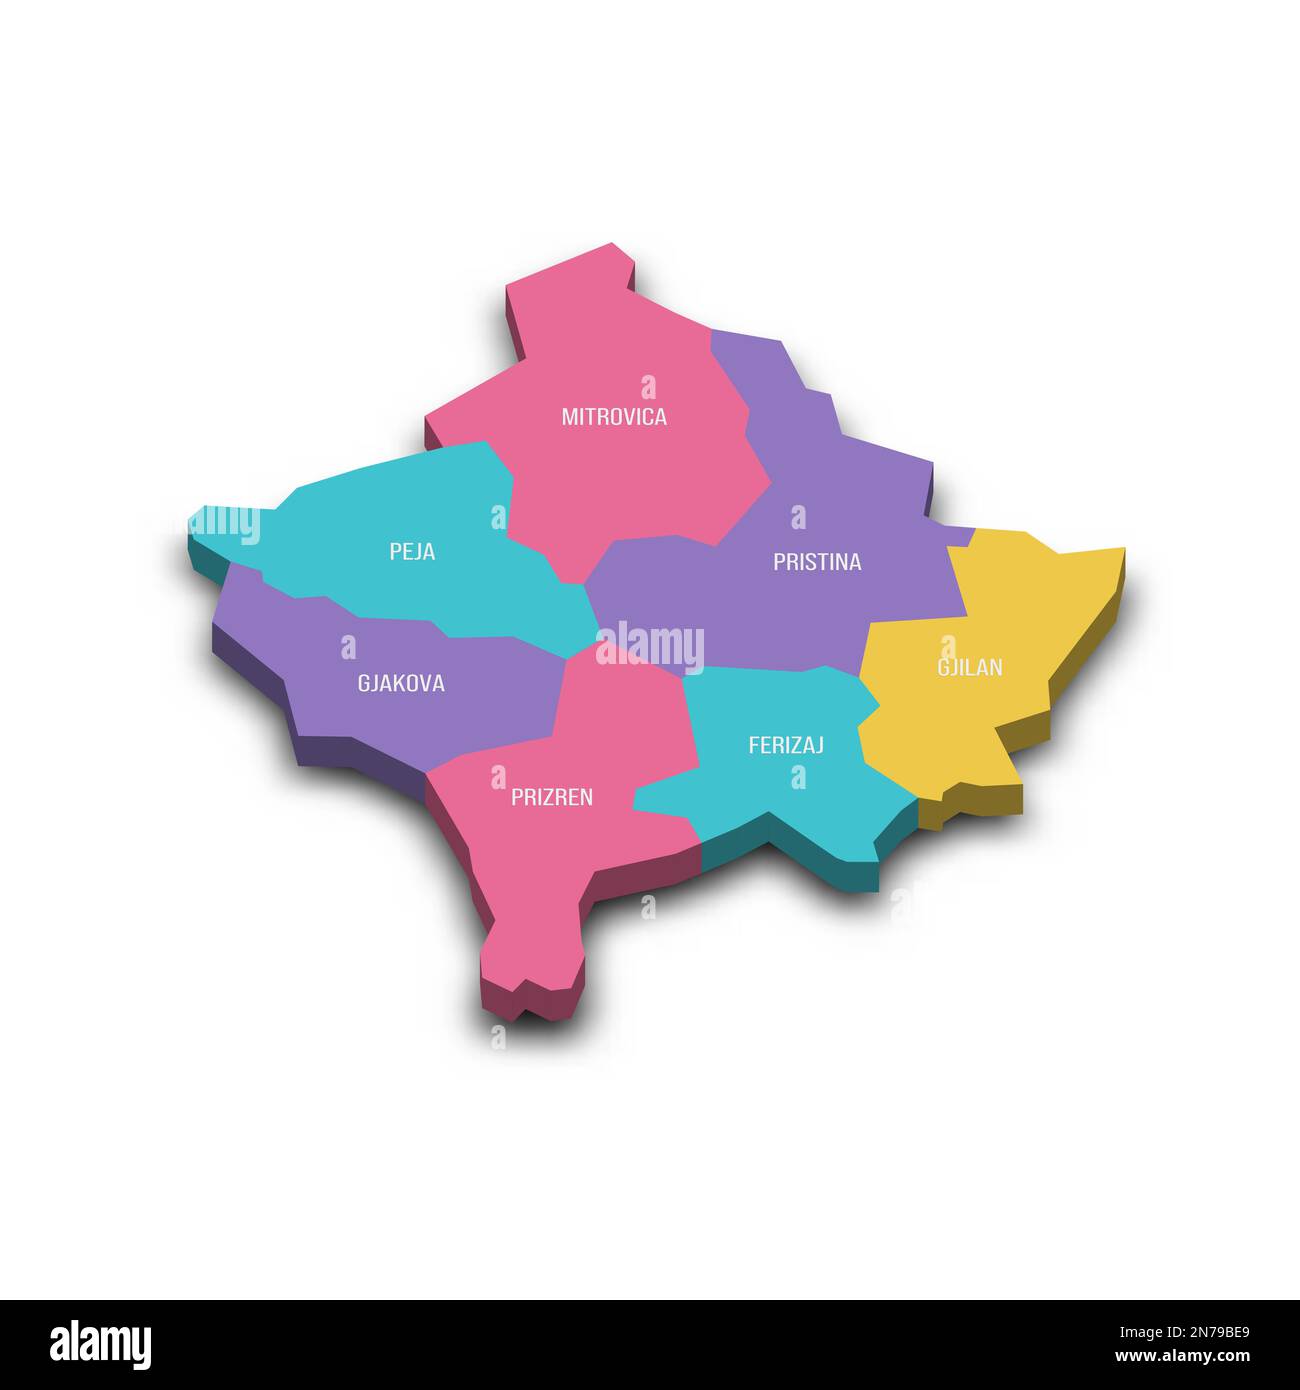 Mappa politica del Kosovo delle divisioni amministrative - distretti. Mappa vettoriale 3D colorata con ombreggiatura e etichette con il nome del paese. Illustrazione Vettoriale